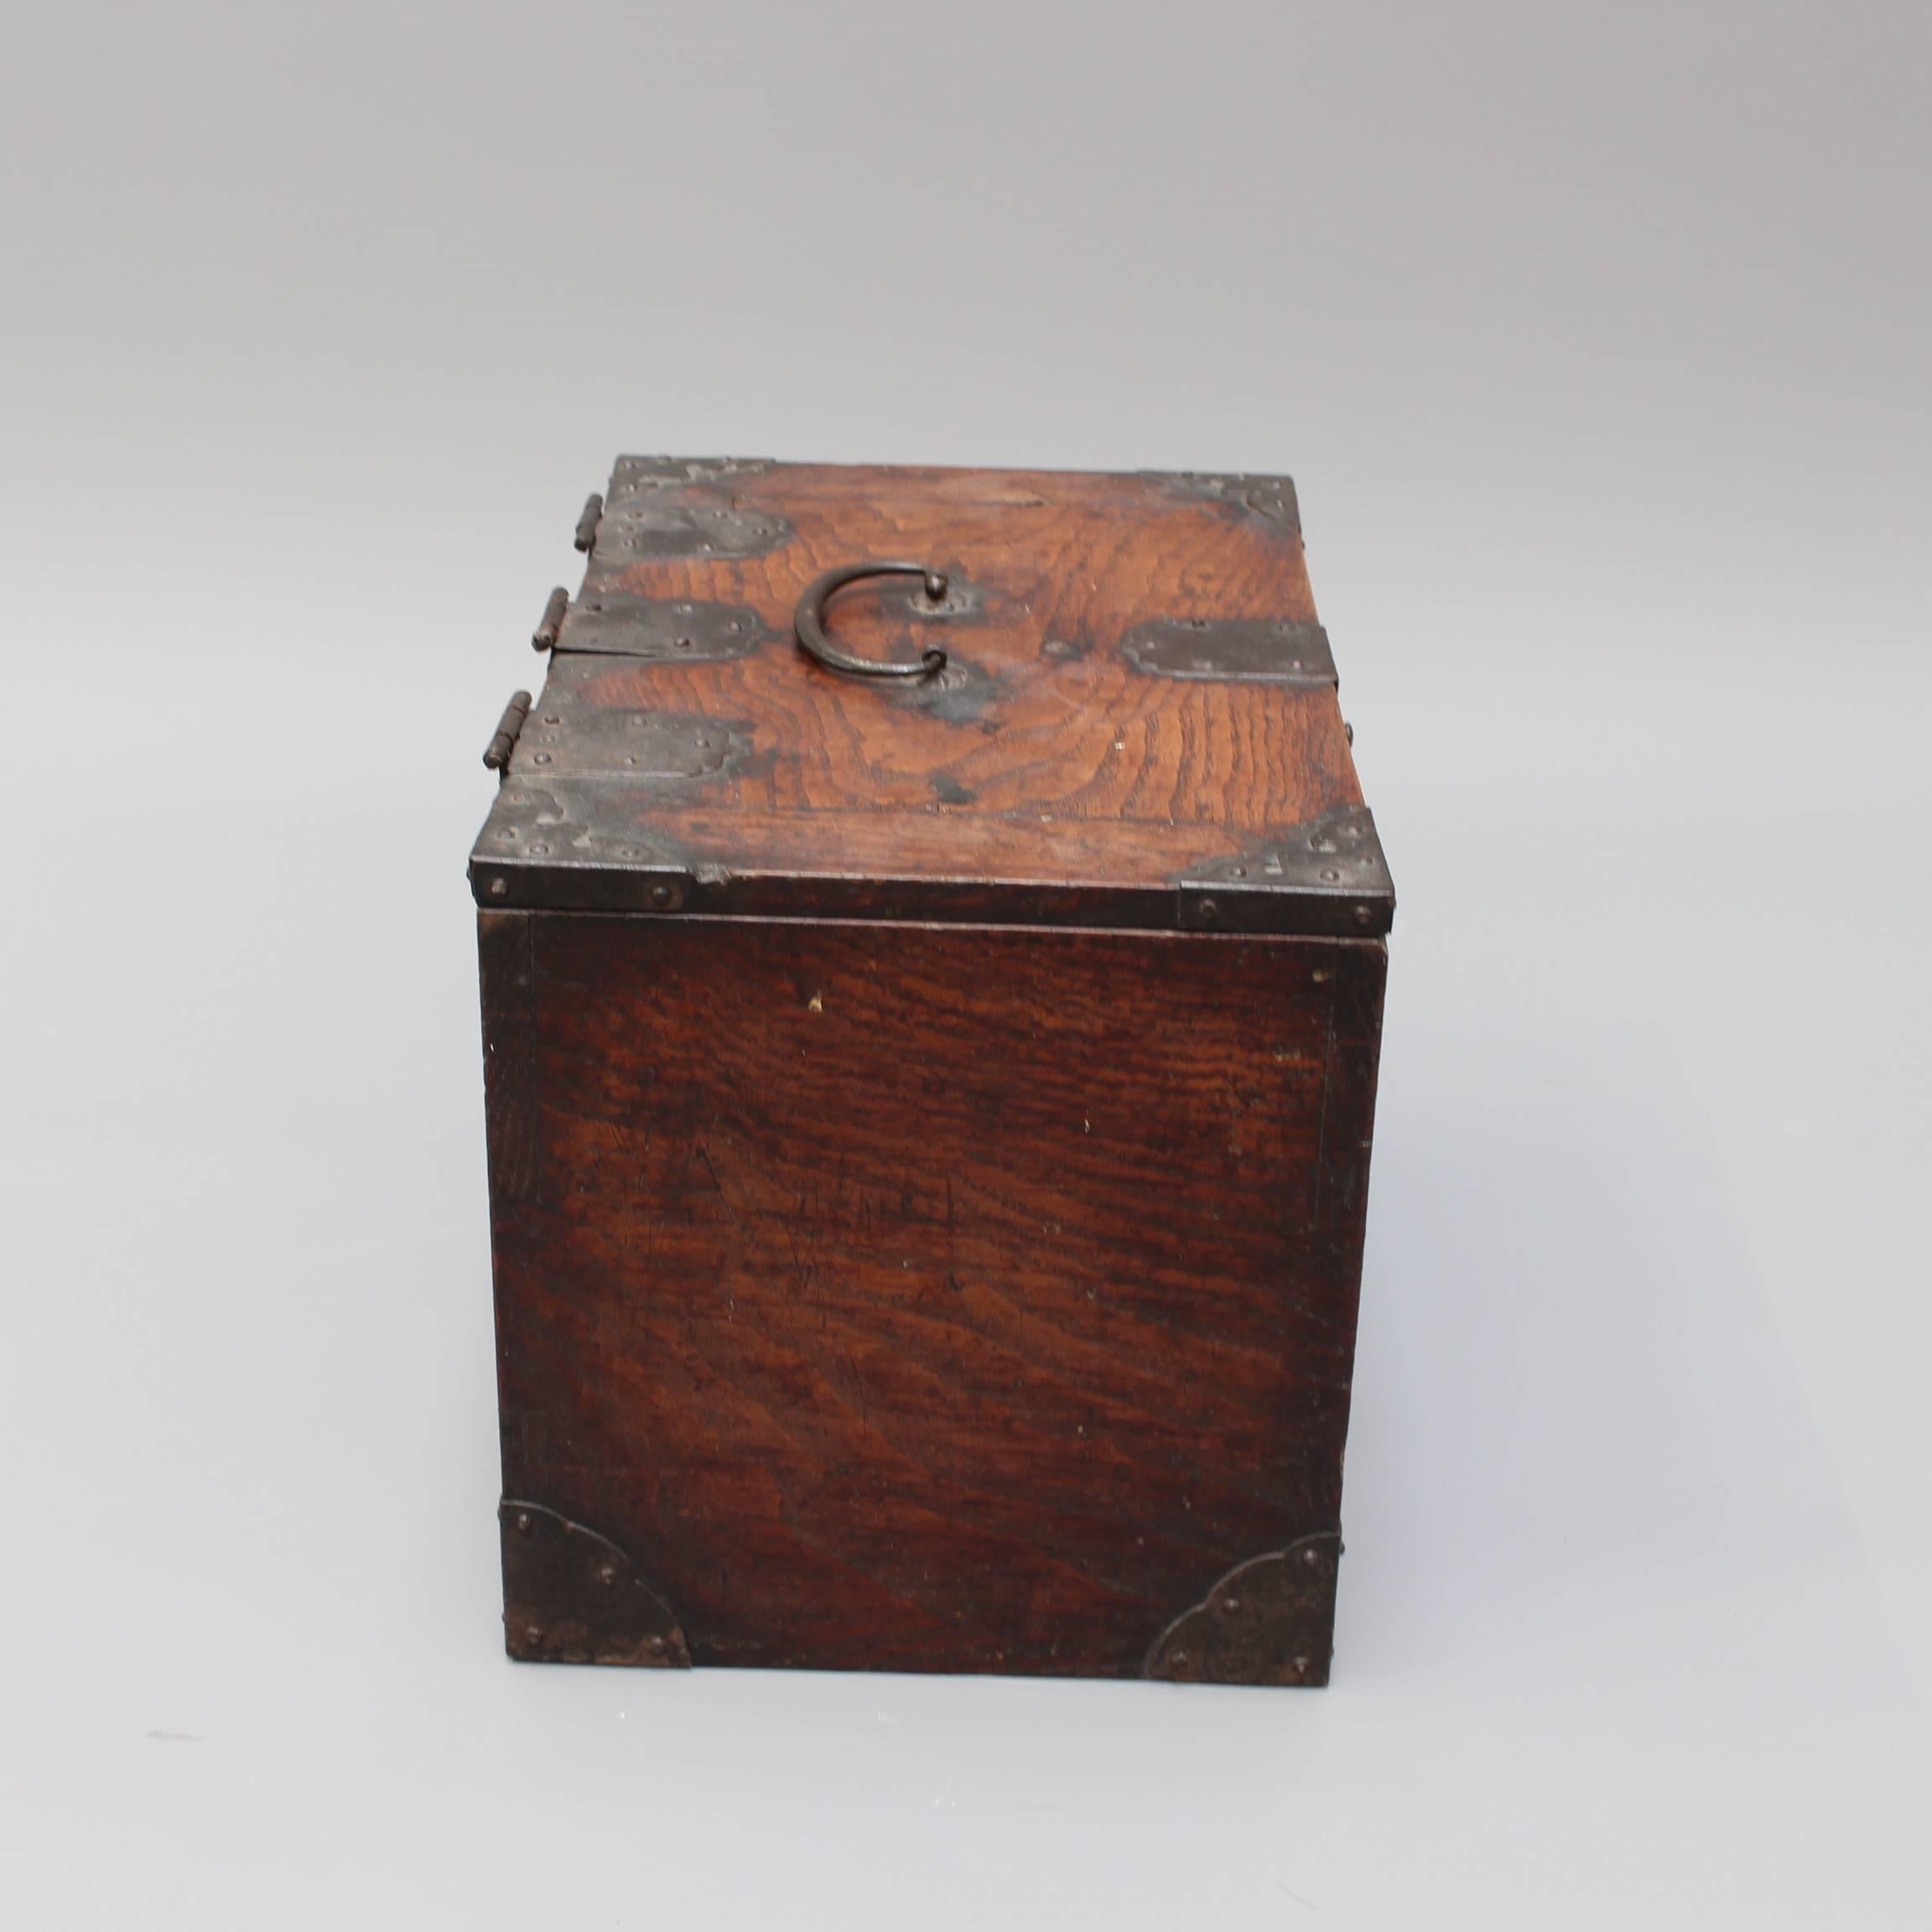 Antique Japanese Wooden Writing Box with Decorative Hardware 'Meiji Era' 8